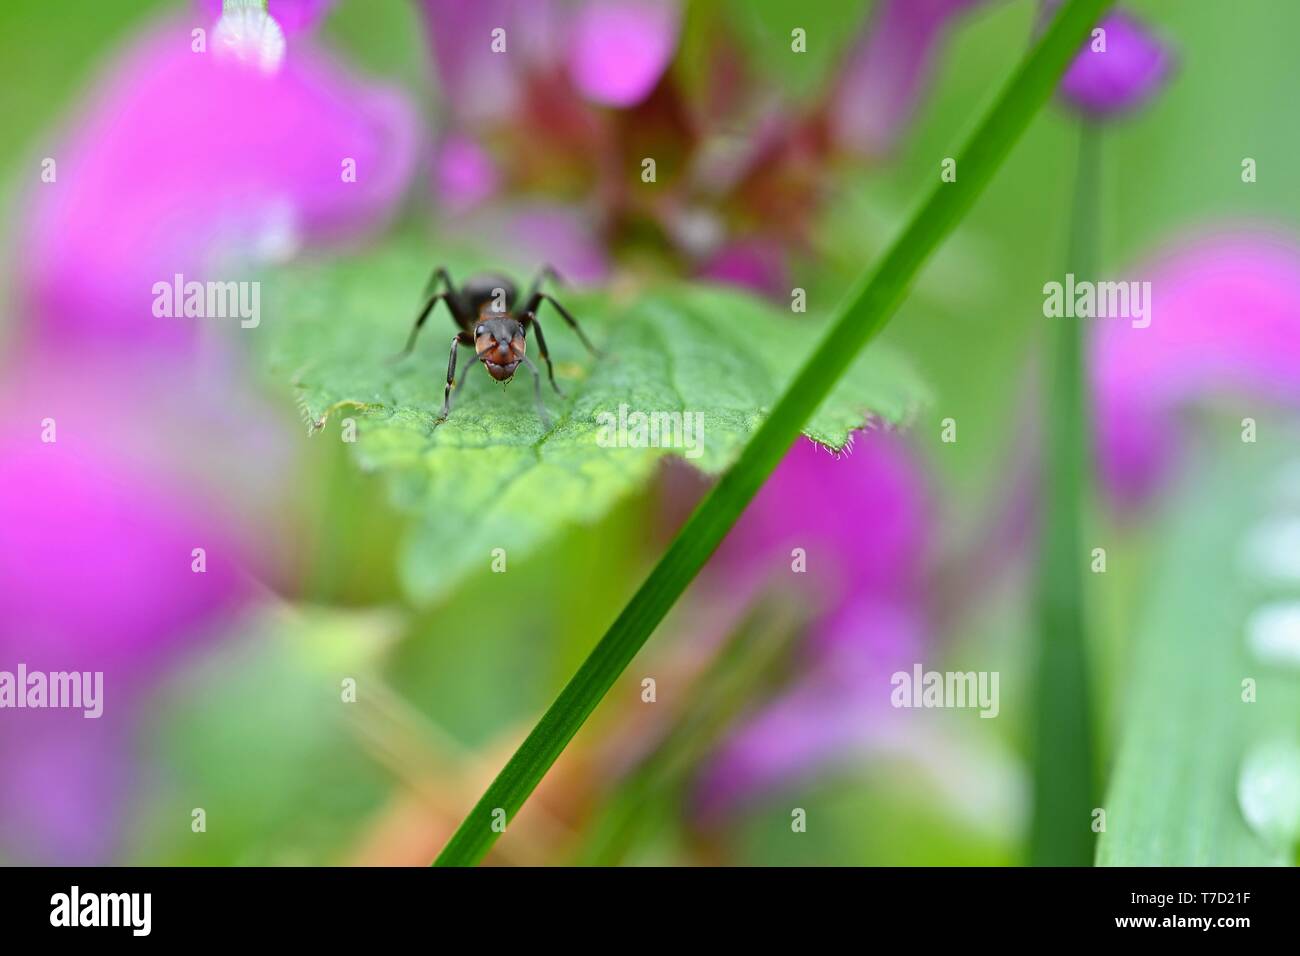 Schöne Makroaufnahme der Ameise auf Blatt im Gras. Natürliche bunten Hintergrund. Stockfoto